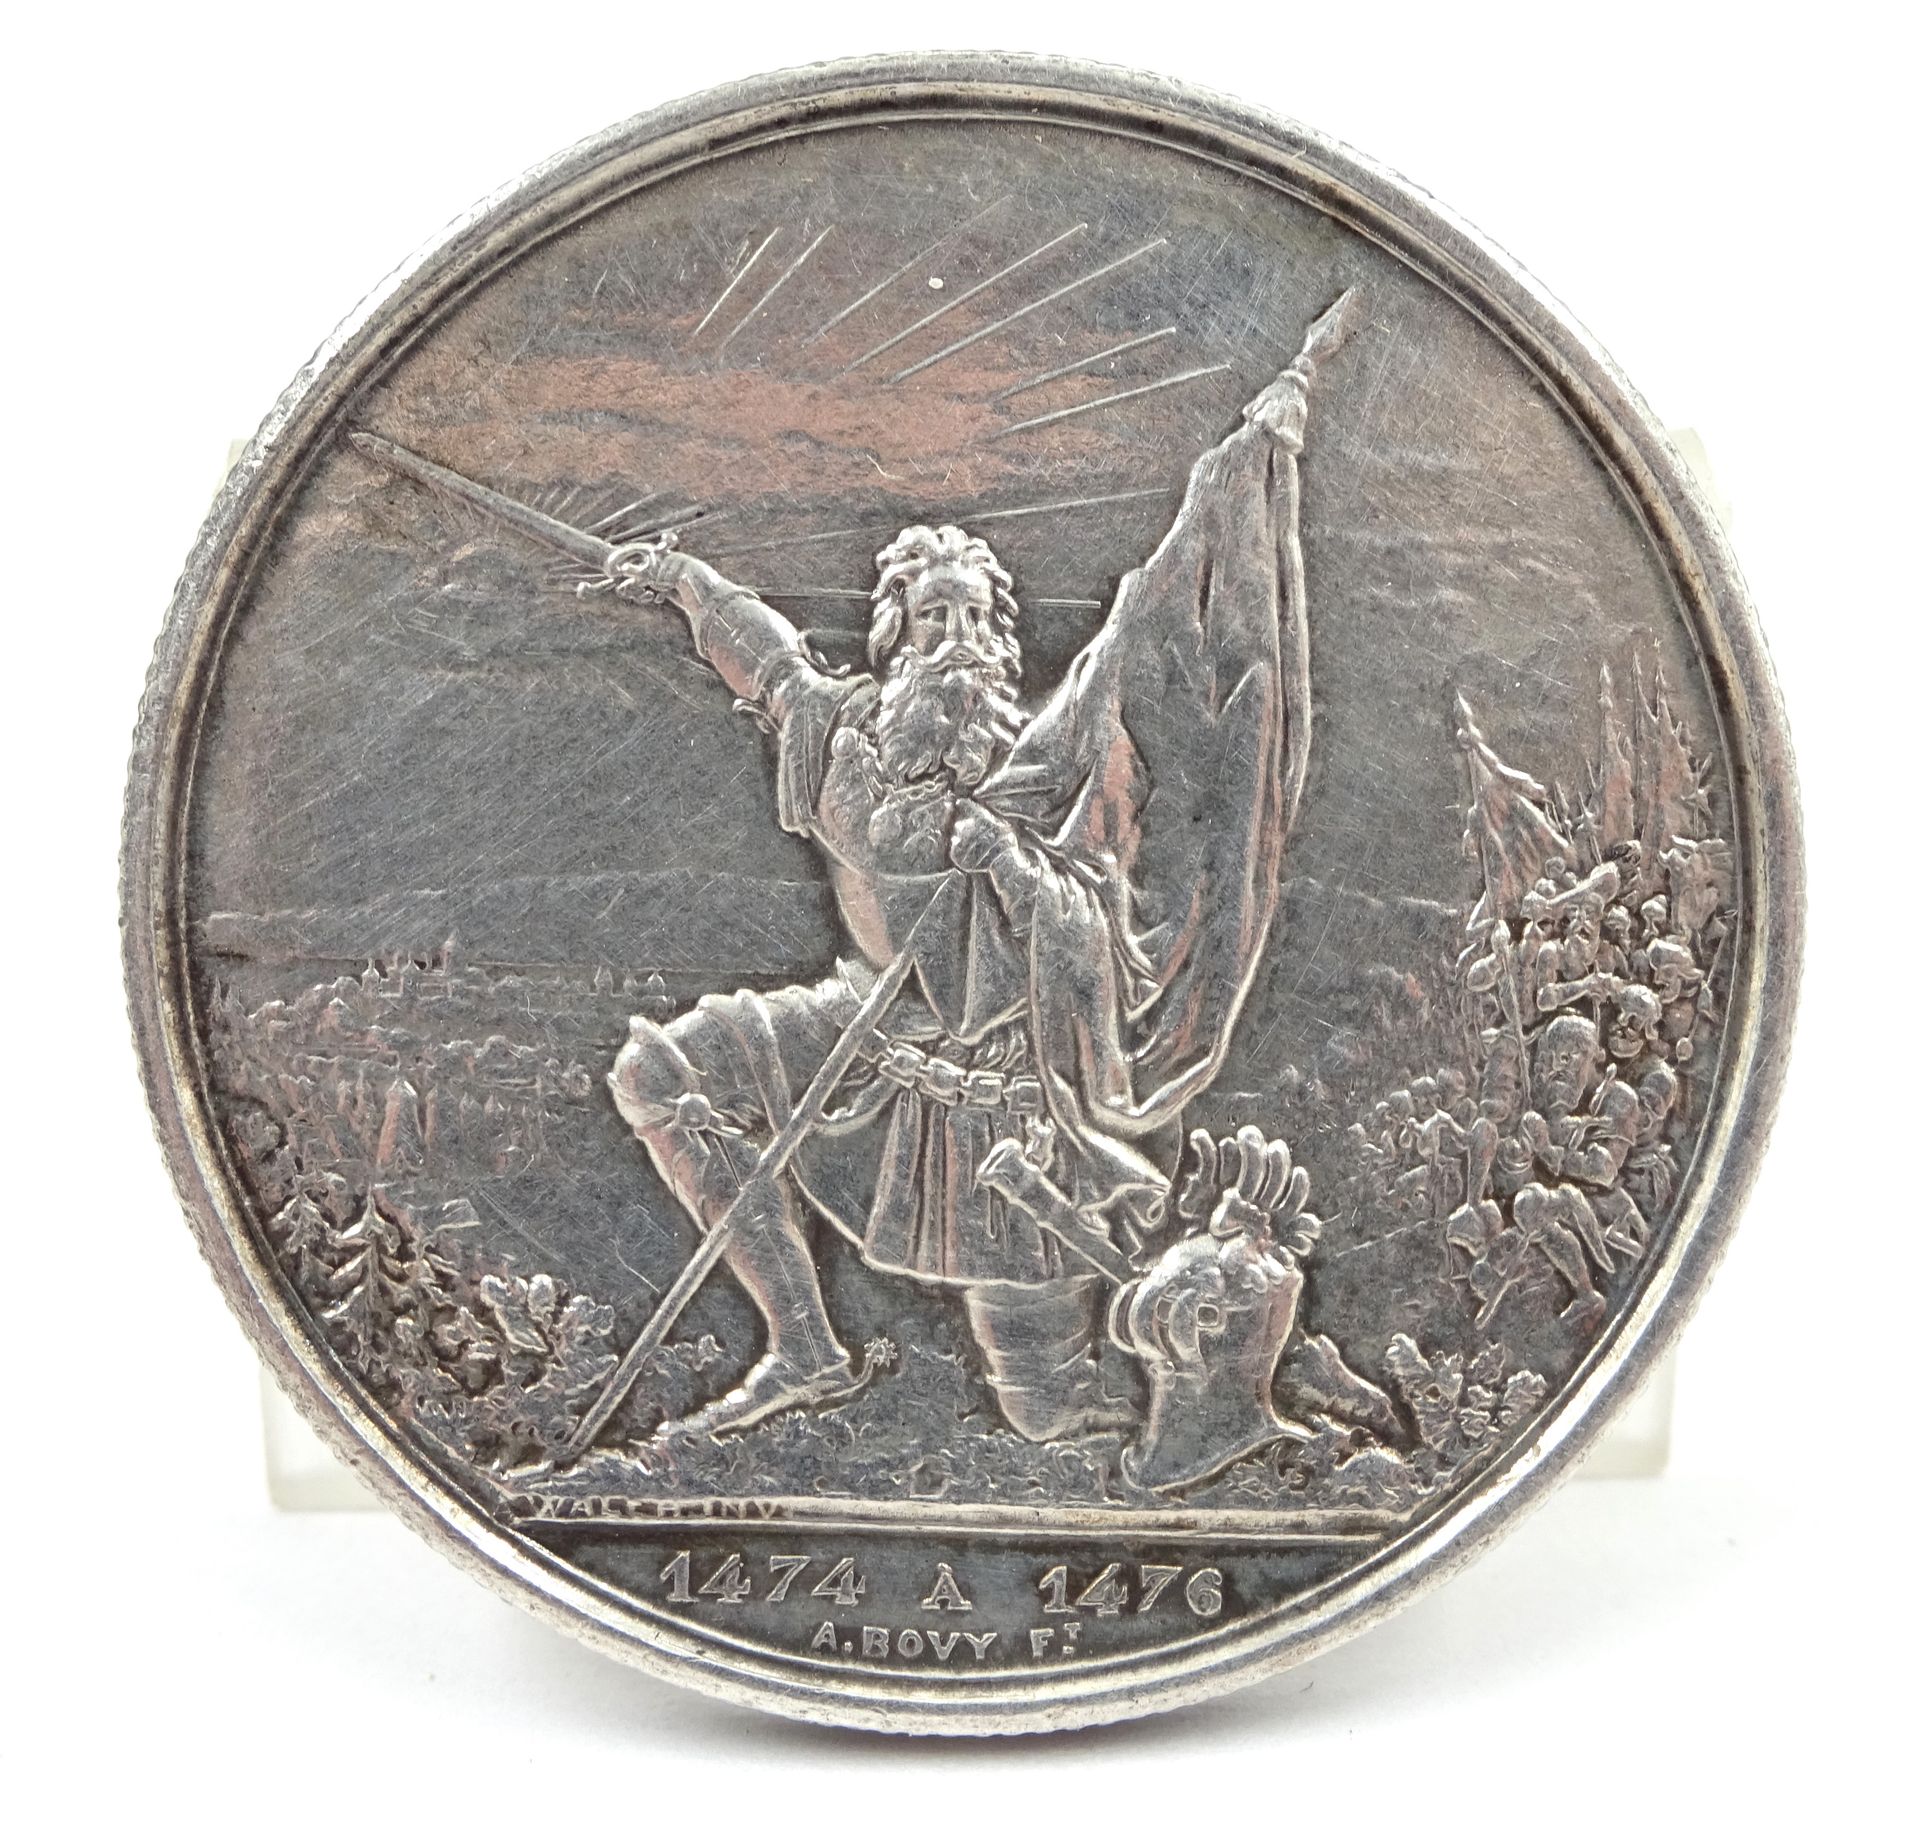 Null Pièce de 5 francs suisses en argent, Saint-Gall, 1874. 24,98 g net.